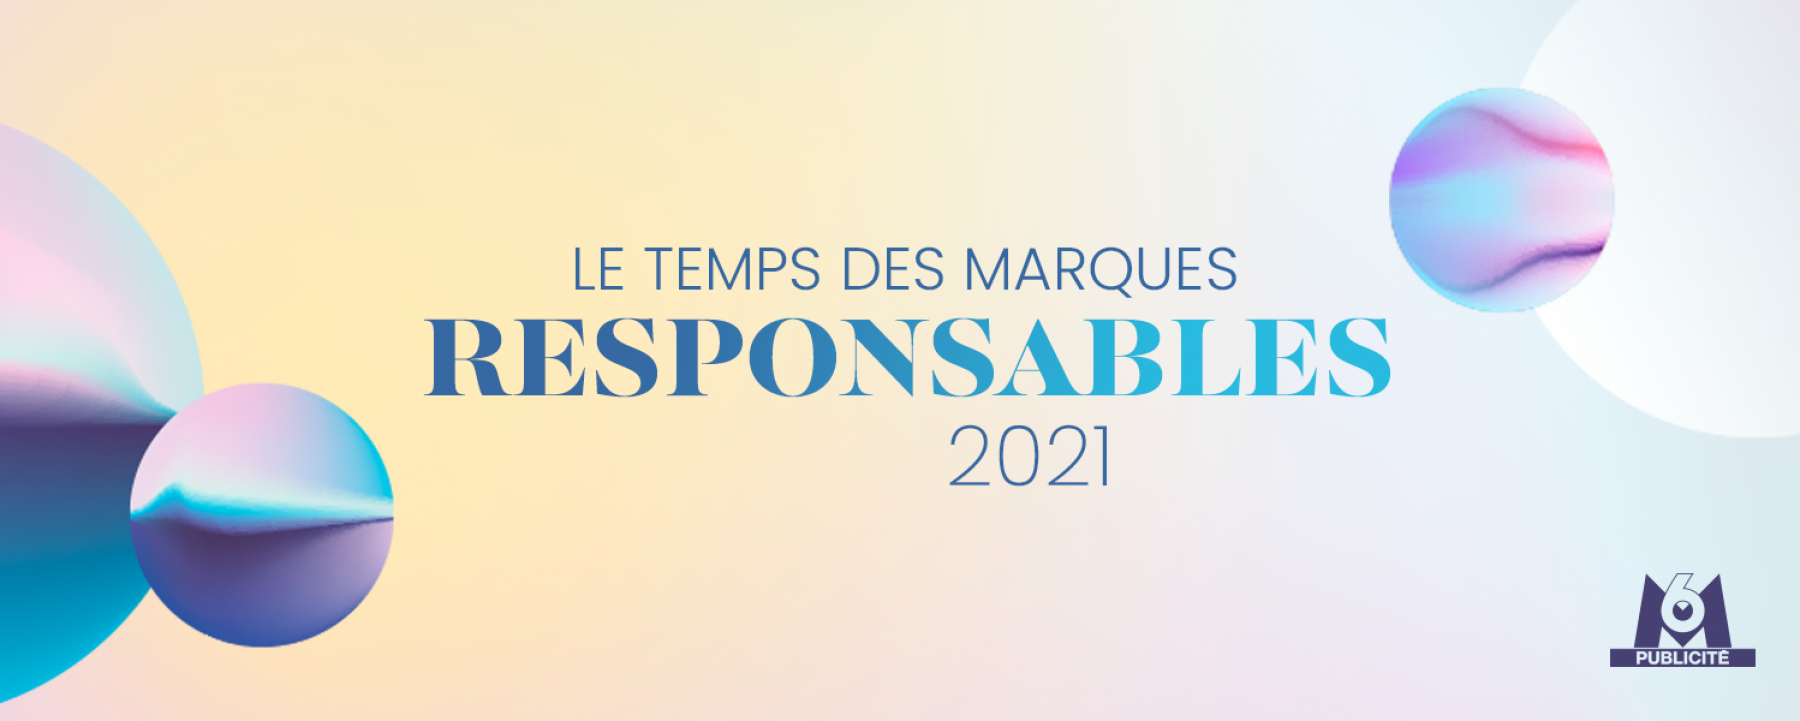 Le temps des marques responsables 2021, un événement en ligne organisé par M6 Publicité le 8 avril 2021